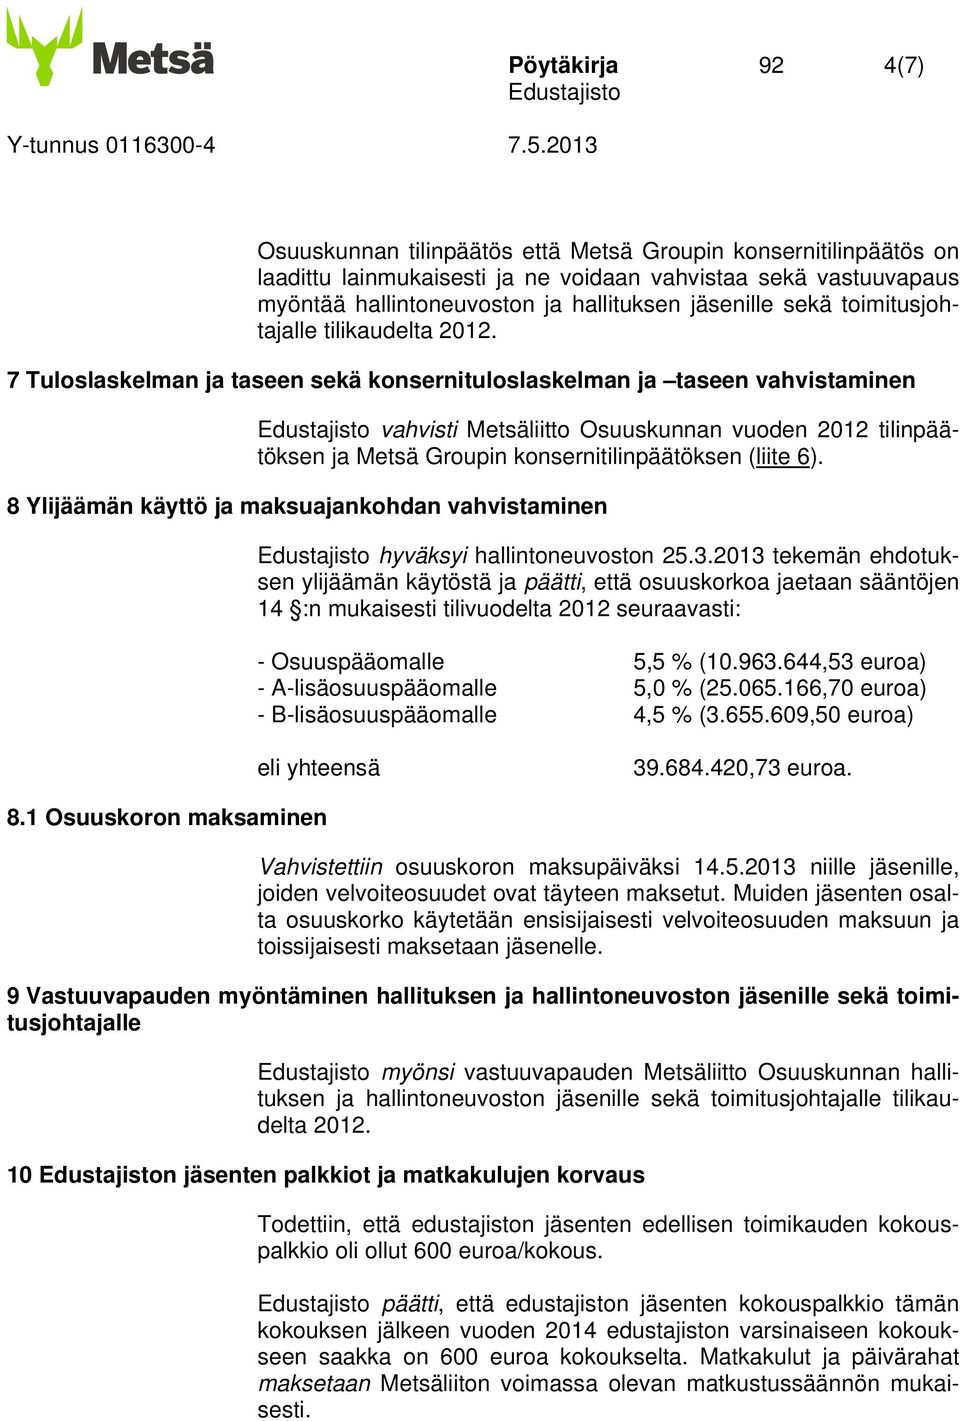 7 Tuloslaskelman ja taseen sekä konsernituloslaskelman ja taseen vahvistaminen vahvisti Metsäliitto Osuuskunnan vuoden 2012 tilinpäätöksen ja Metsä Groupin konsernitilinpäätöksen (liite 6).